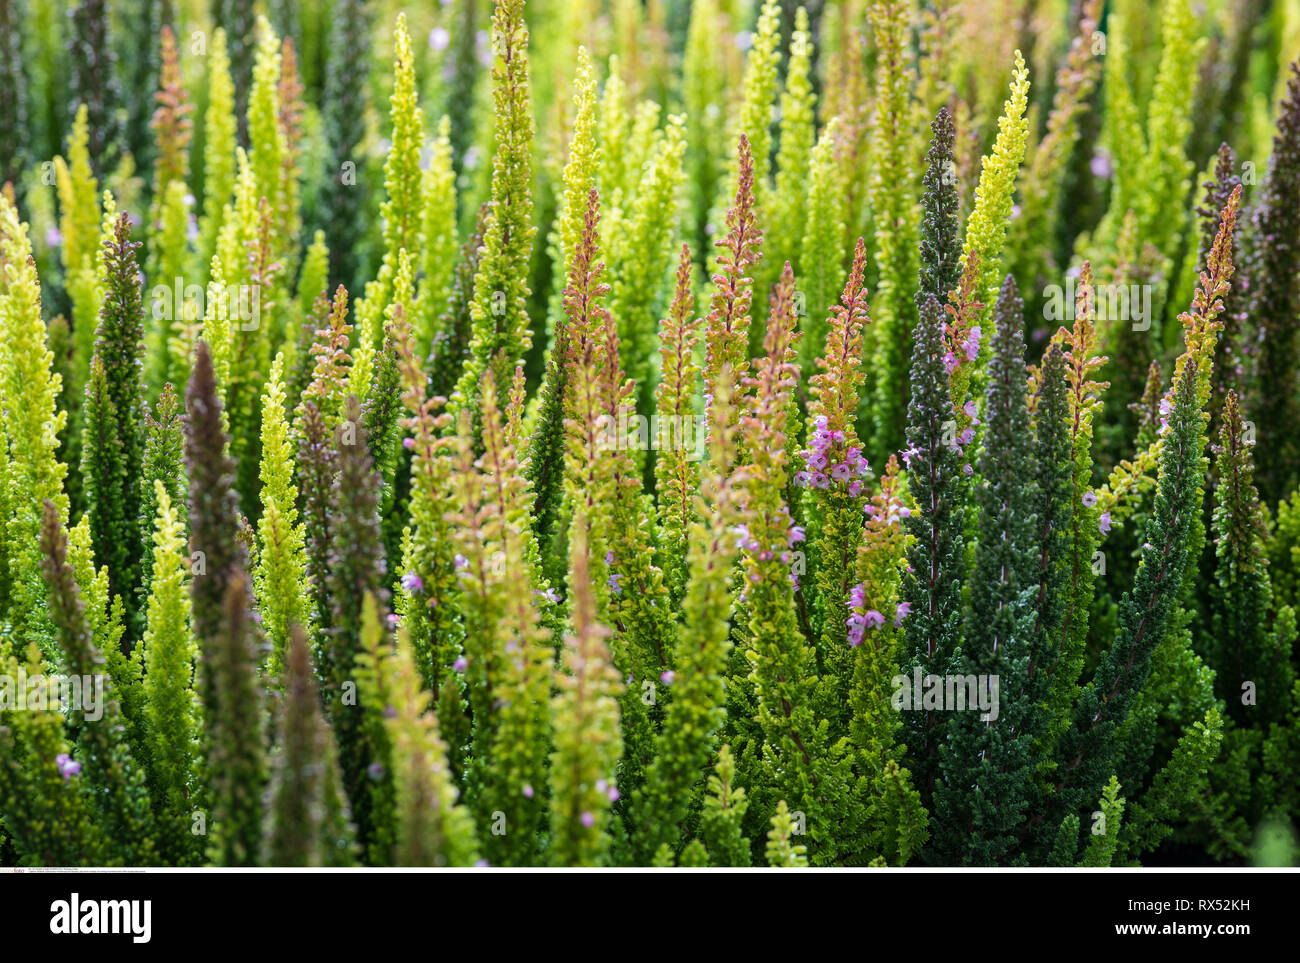 La botanica, fioritura moorland erba della bellezza, attenzione! Per Greetingcard-Use / Postcard-Use nei Paesi di lingua tedesca talune restrizioni possono applicare Foto Stock